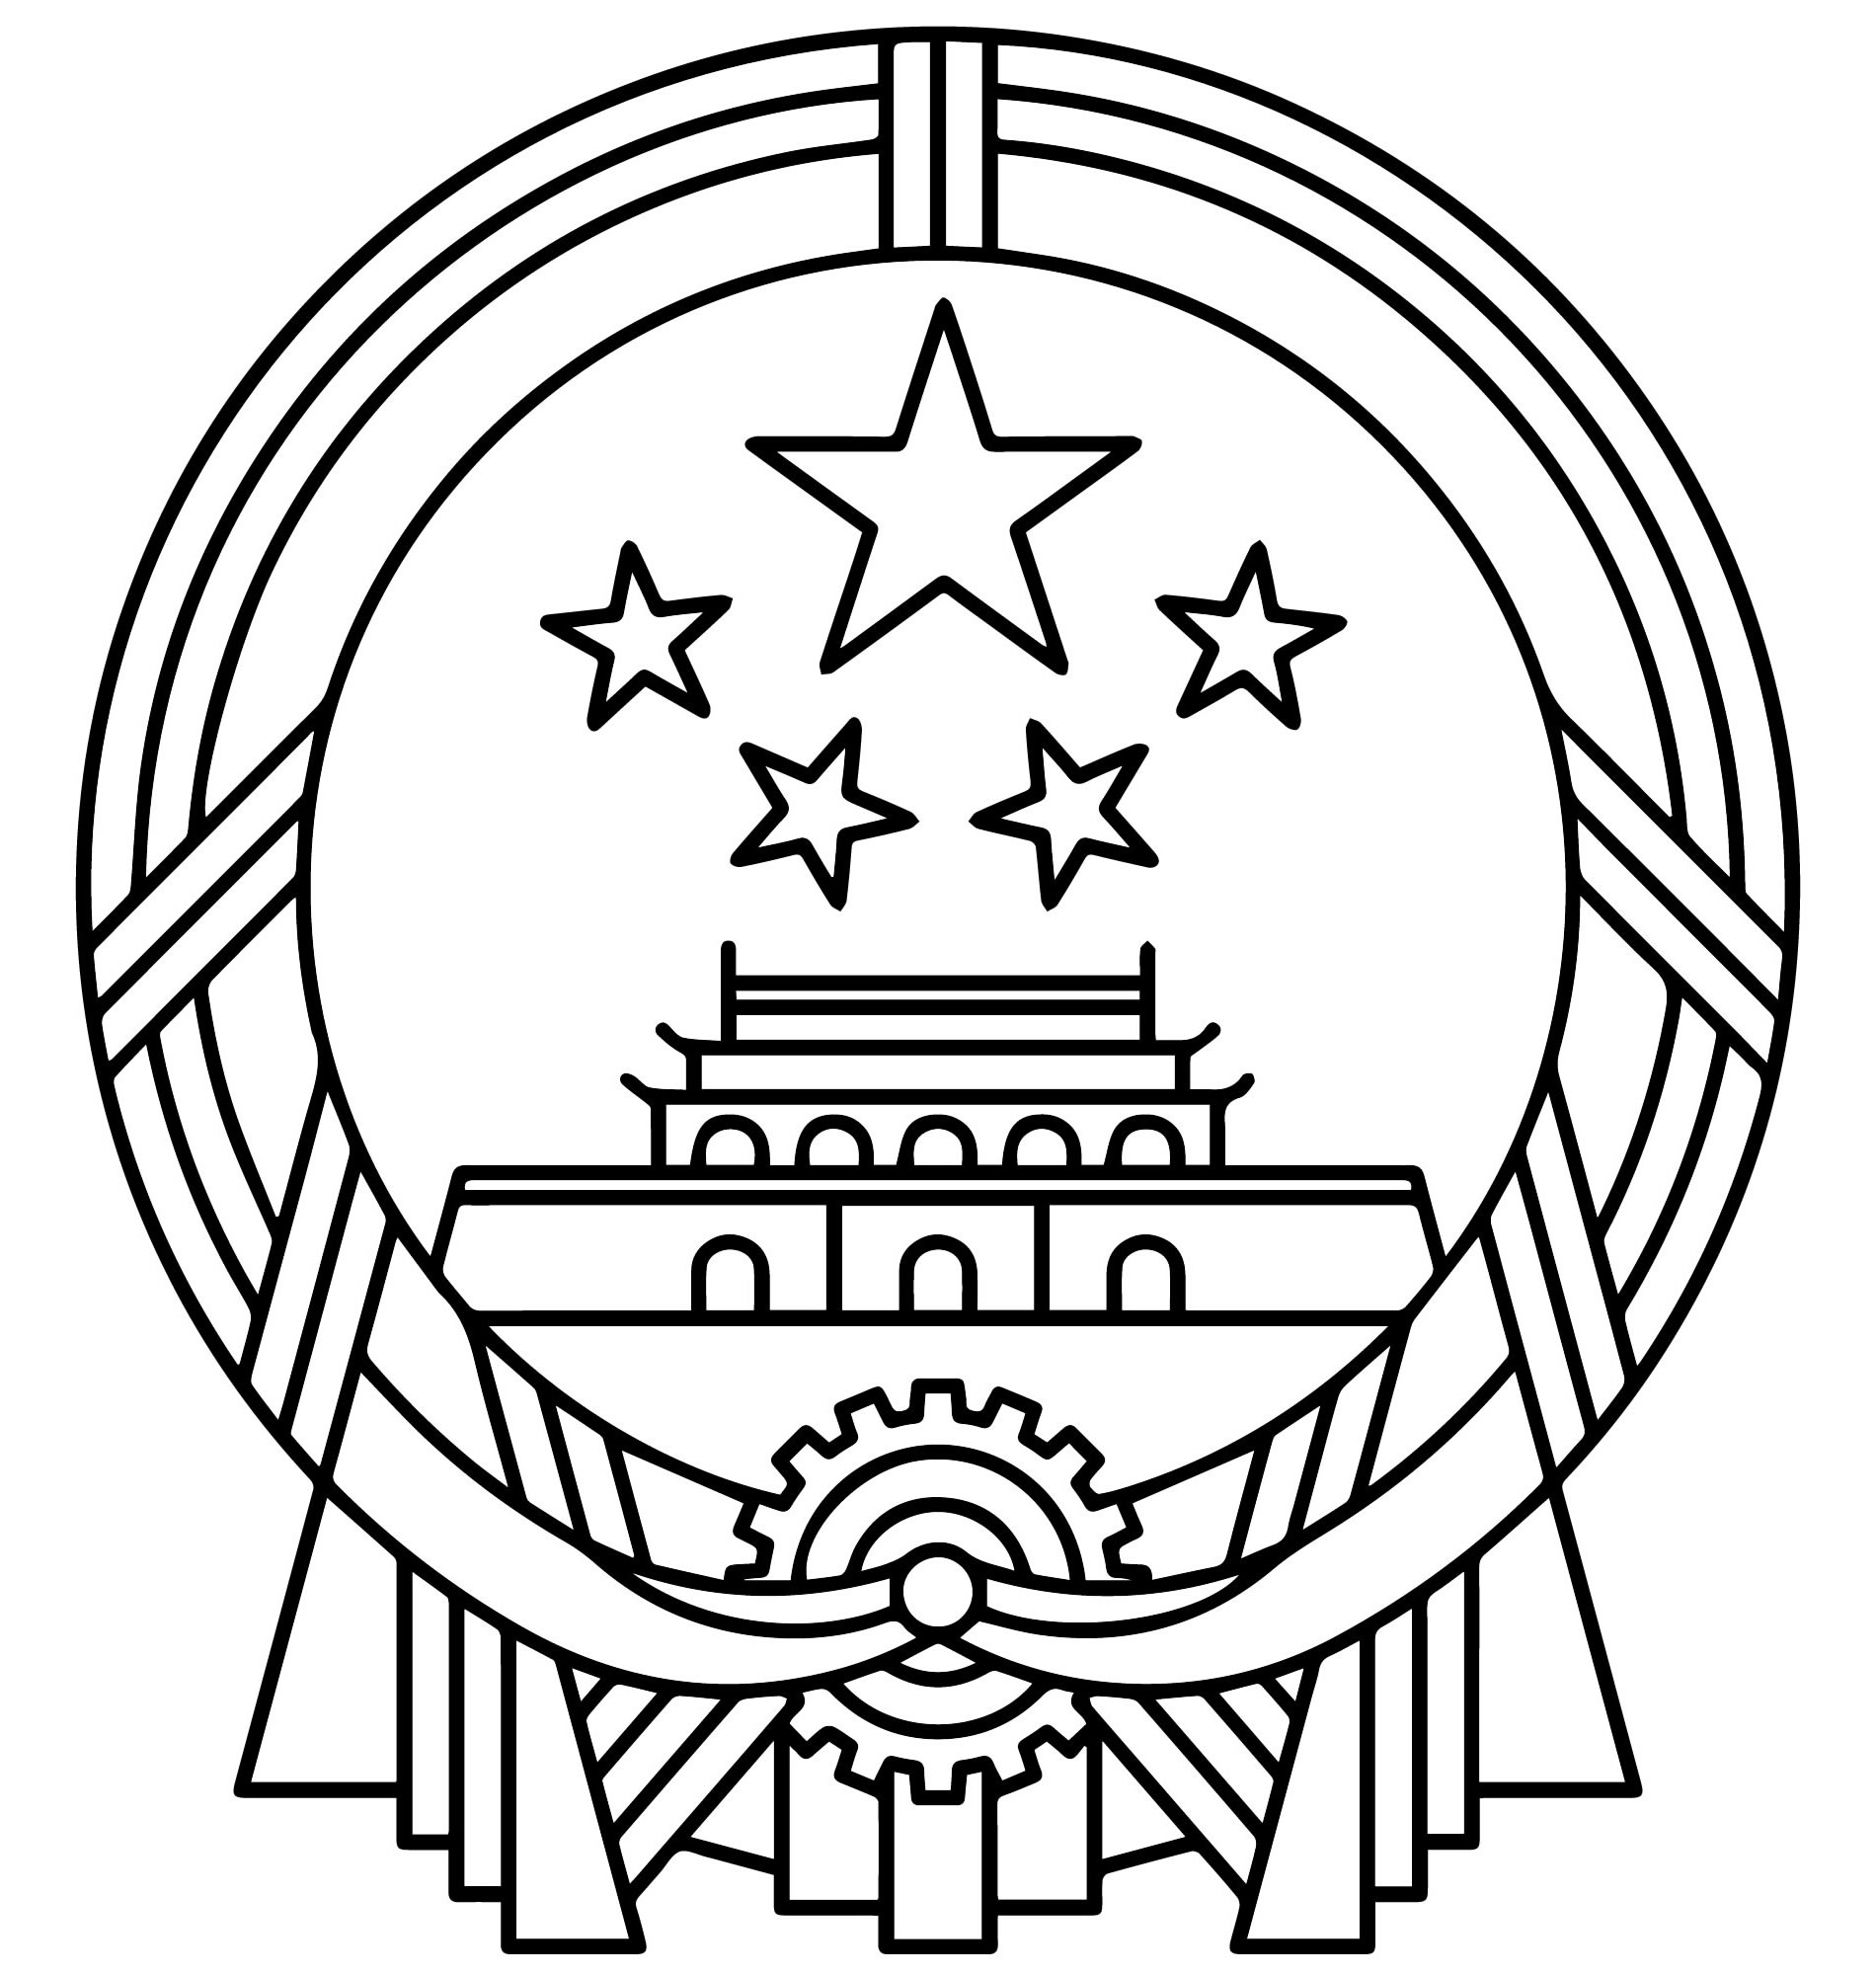 Герб Китая раскраска для детей